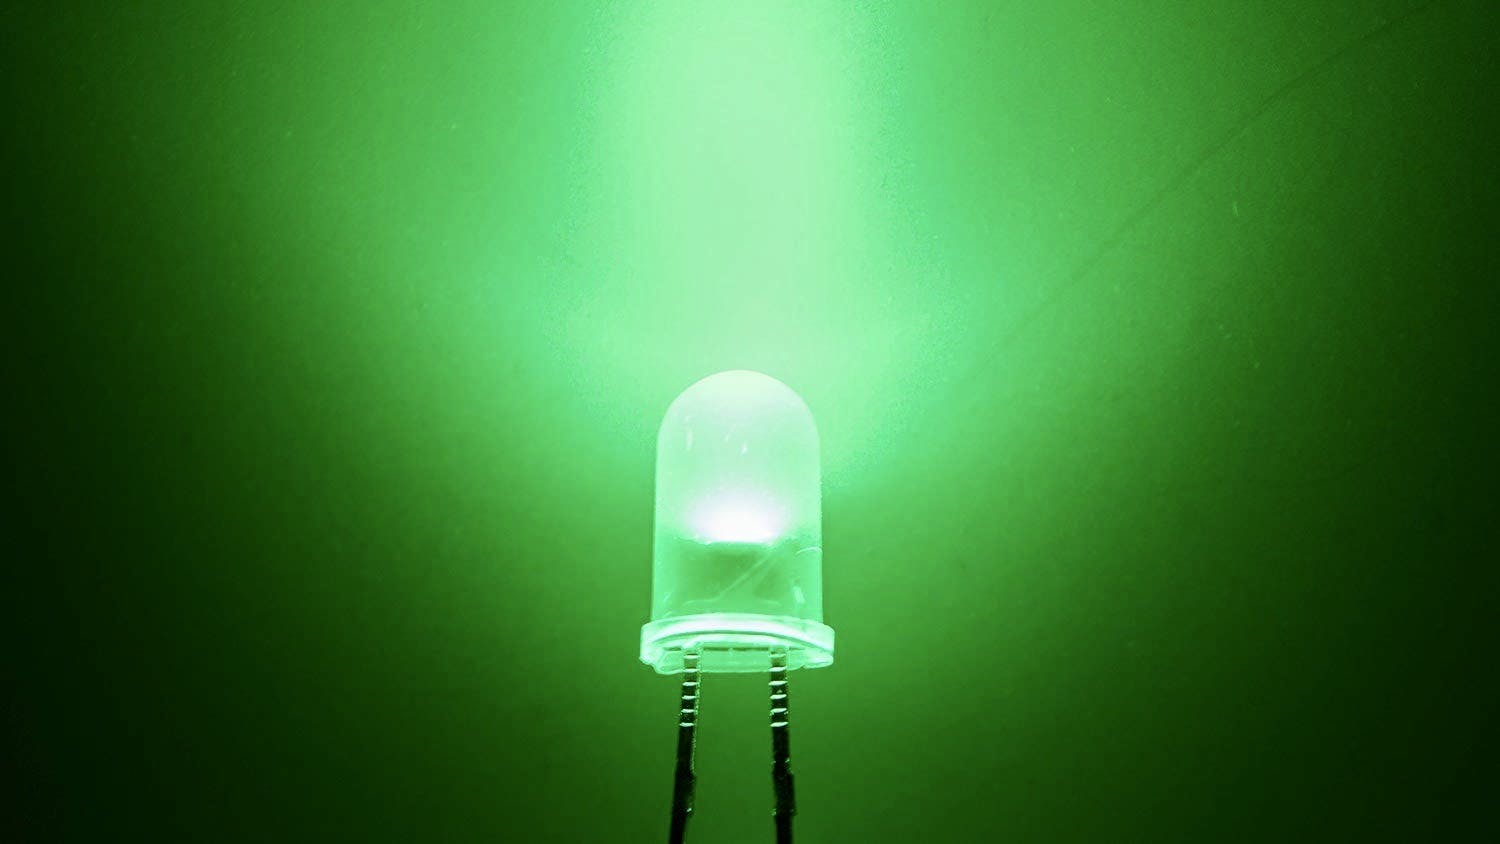 Green LED